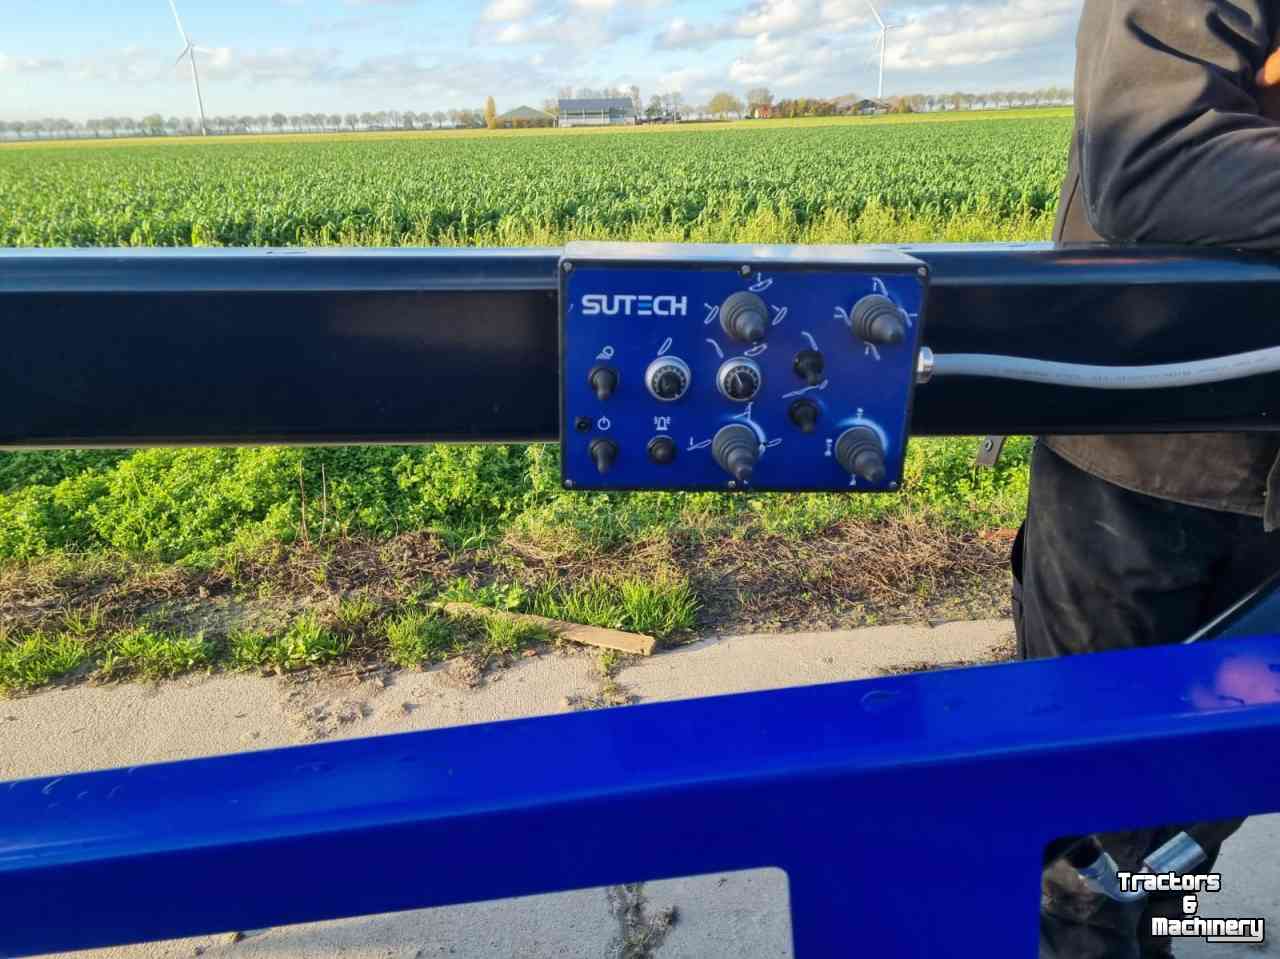 Onion harvester SU-Tech SuTech uienlader